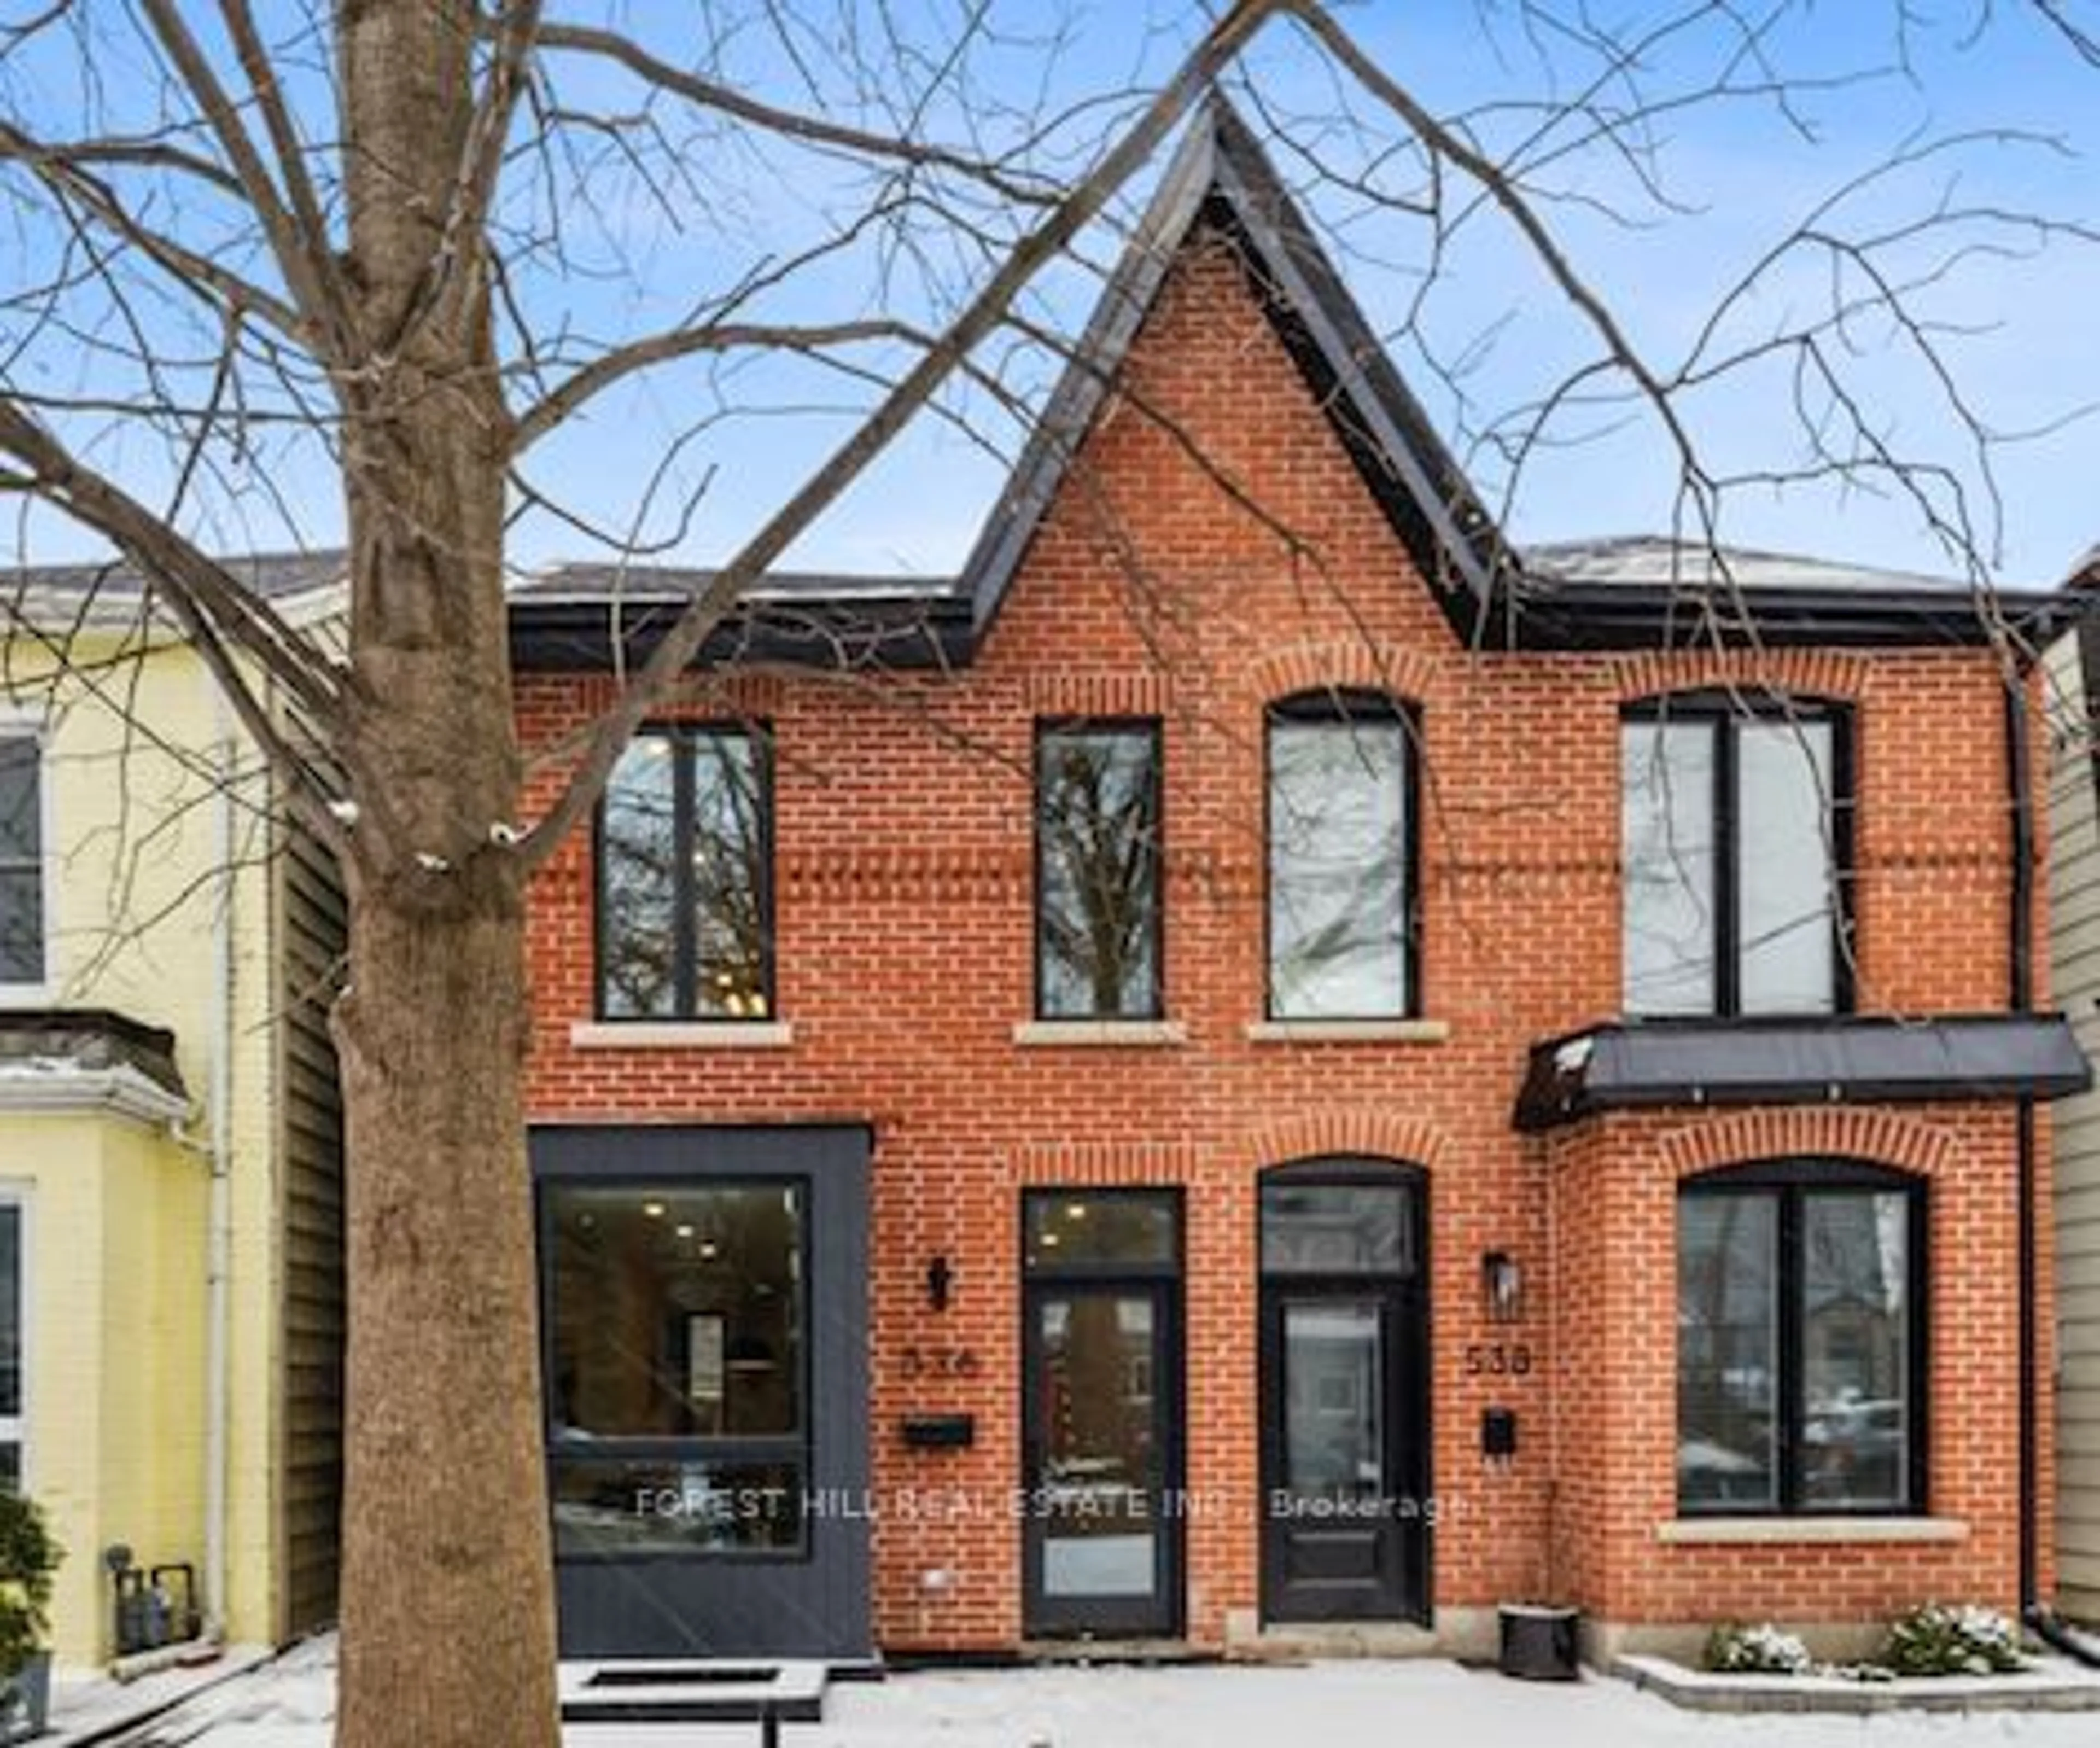 Home with brick exterior material for 536 Quebec Ave, Toronto Ontario M6P 2V7